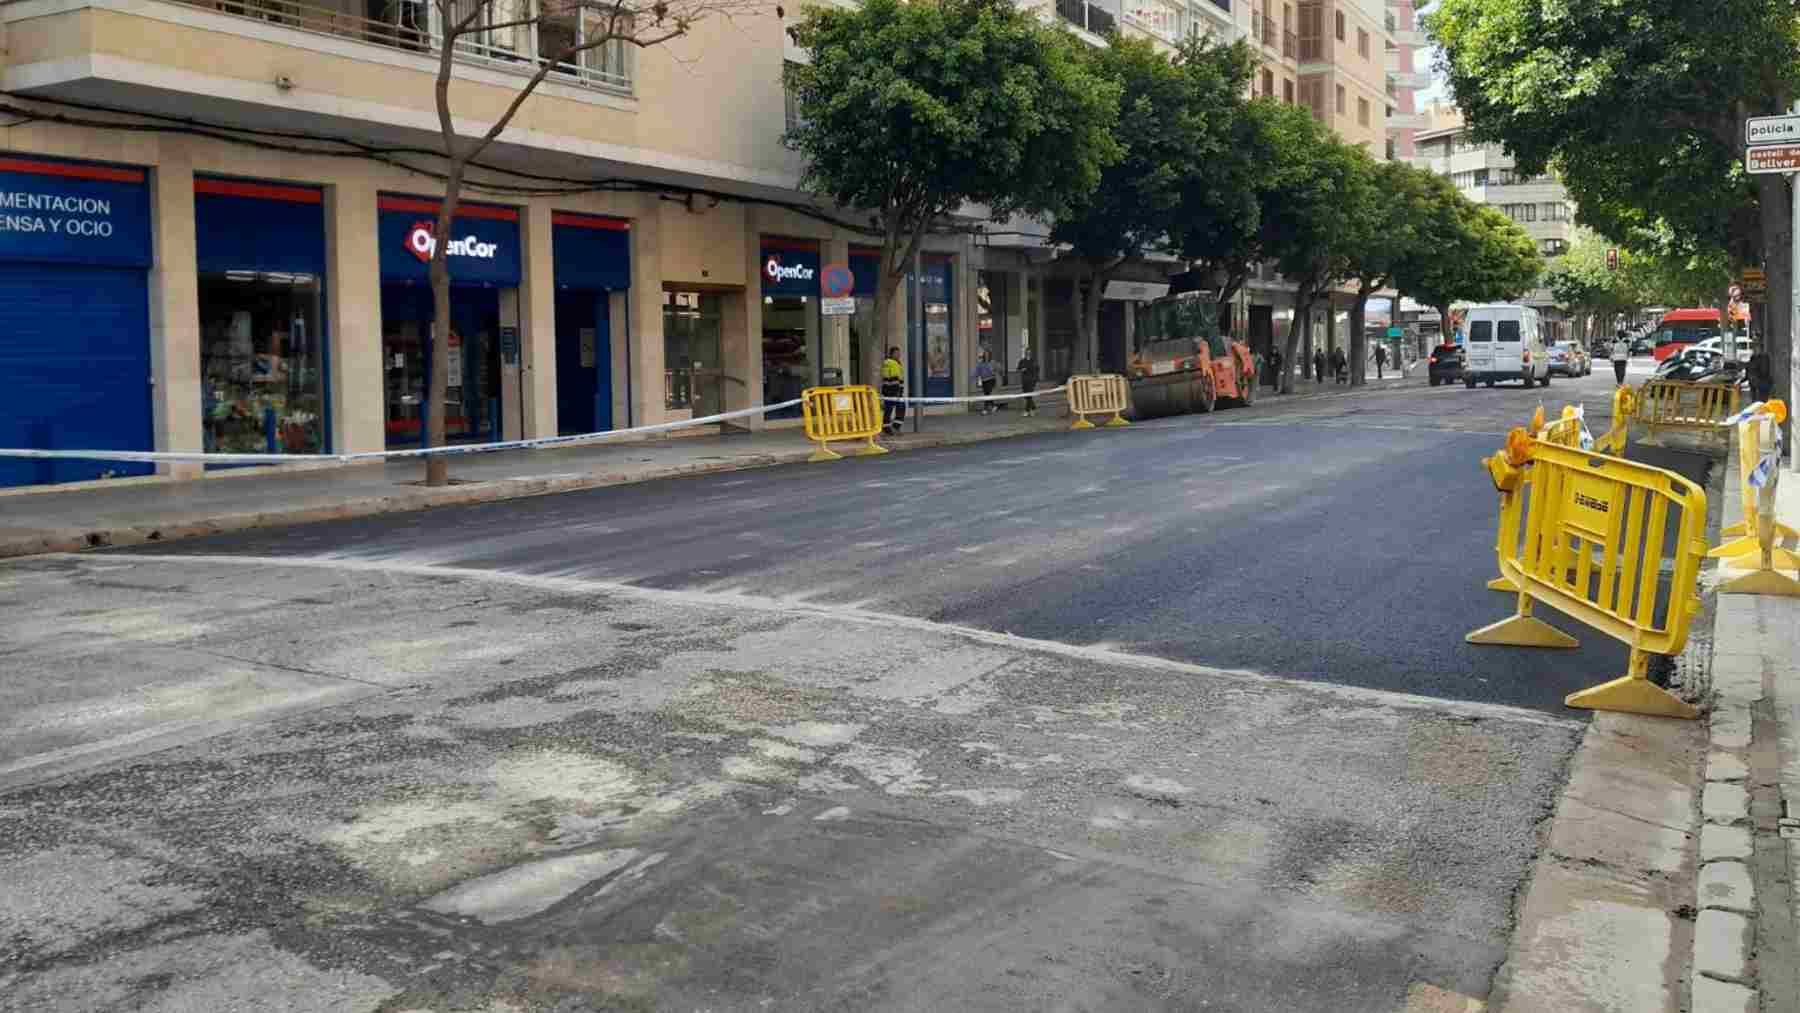 Se reabre al tráfico la calle Ramón y Cajal tras asfaltar la zona después de repararse la tubería.